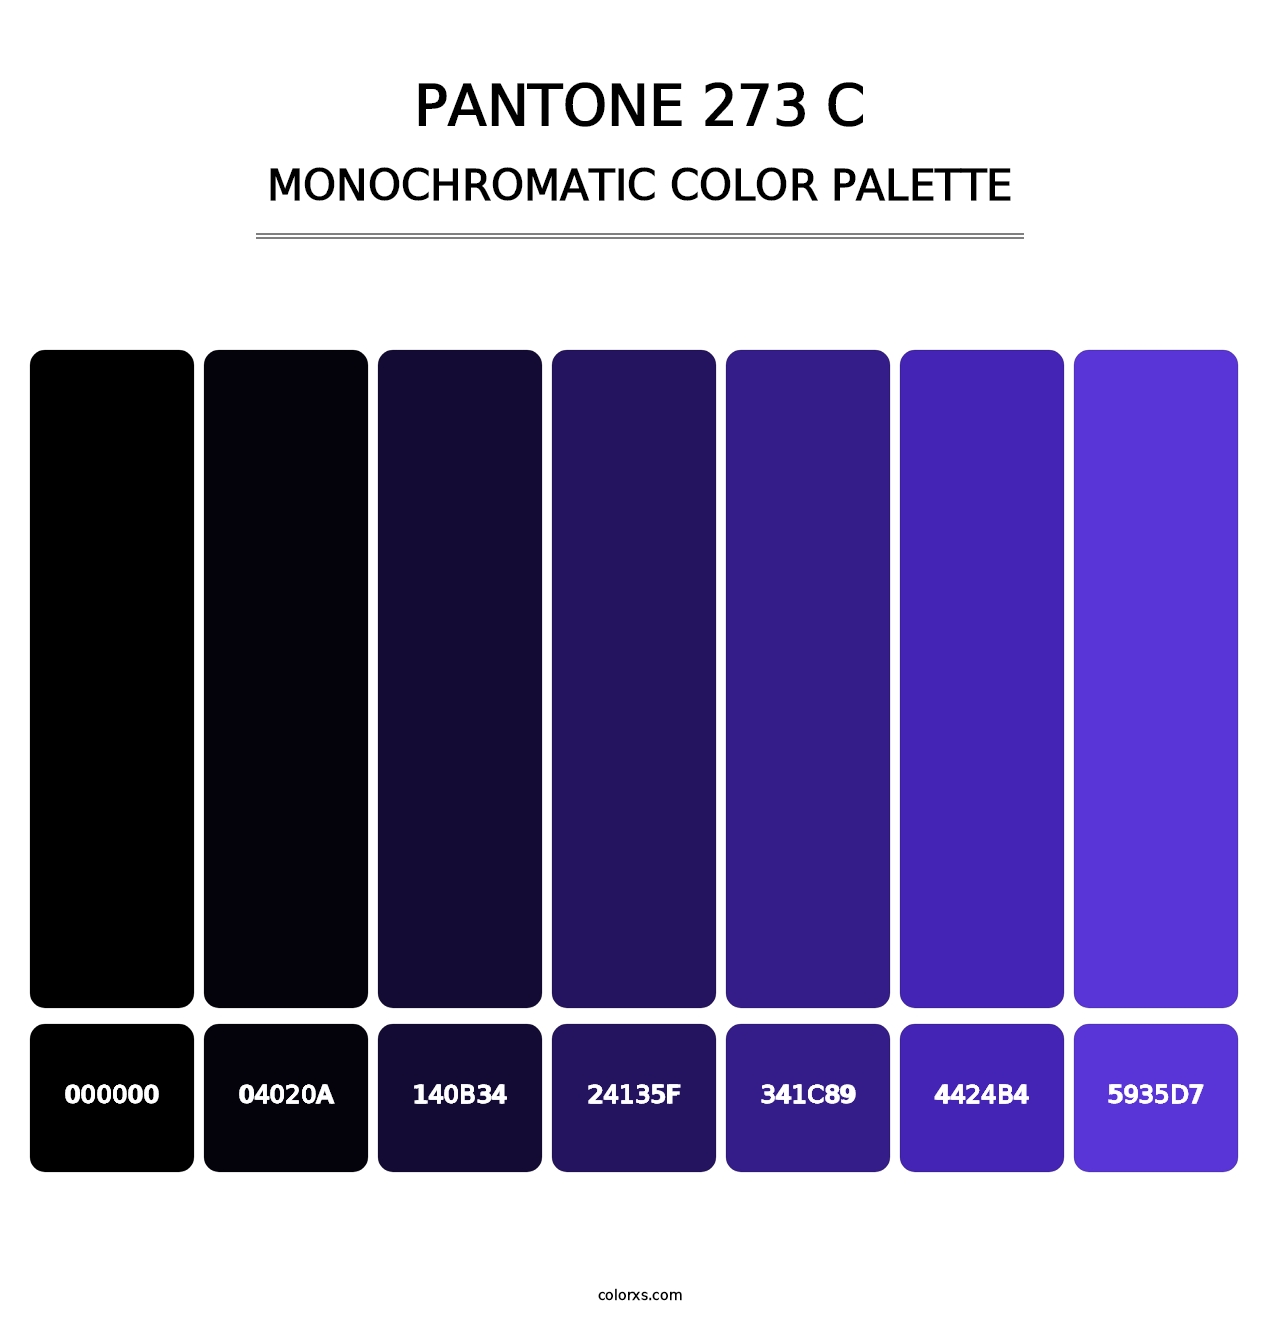 PANTONE 273 C - Monochromatic Color Palette